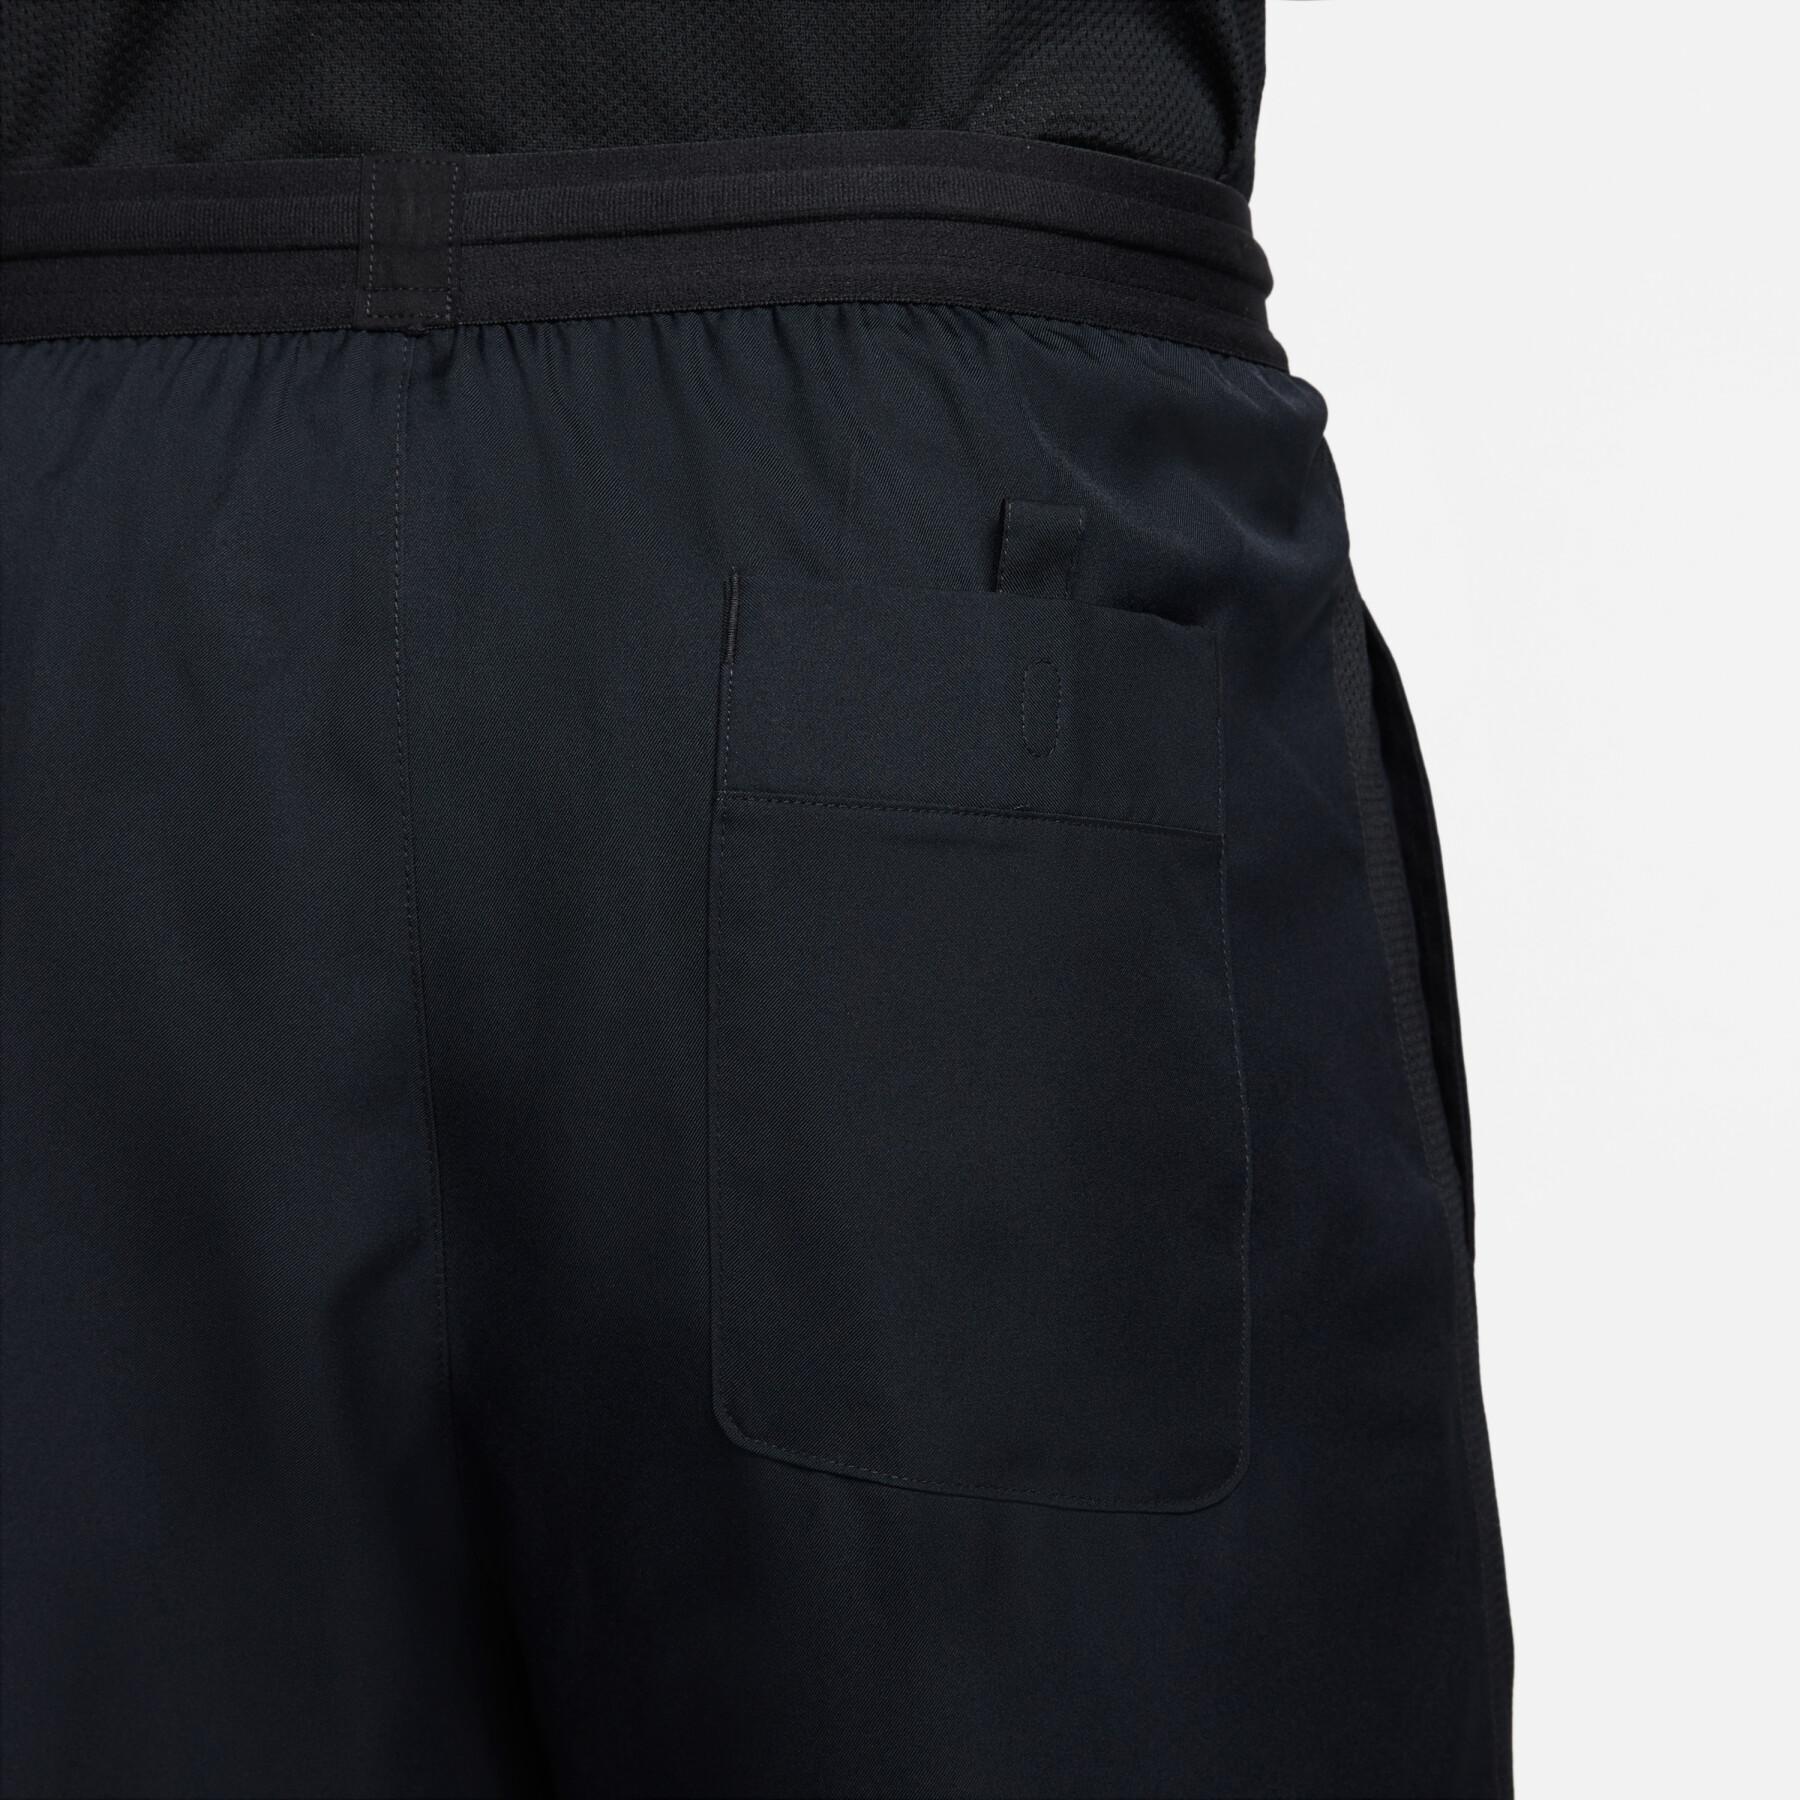 Pantalón corto Nike dry